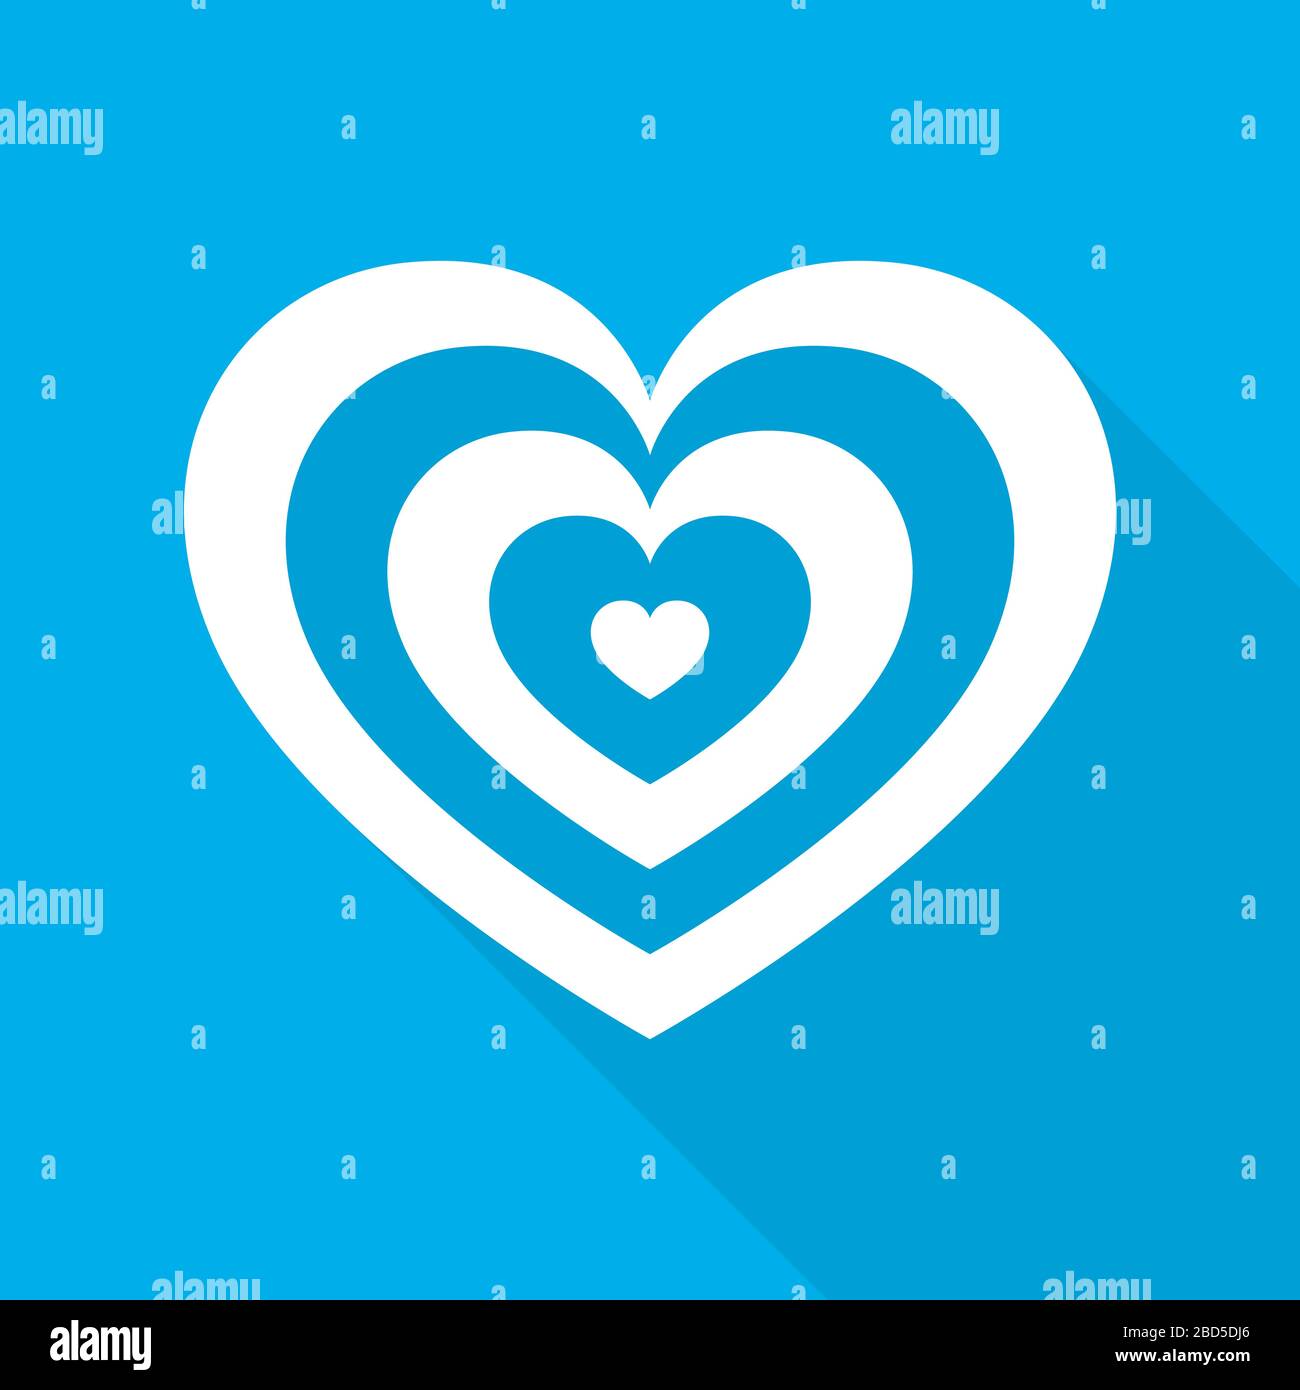 Weißes Herz für den Valentinstag. Abstraktes Herz mit langem Schatten auf blauem Hintergrund in flachem Design. Vektorgrafiken. Stock Vektor